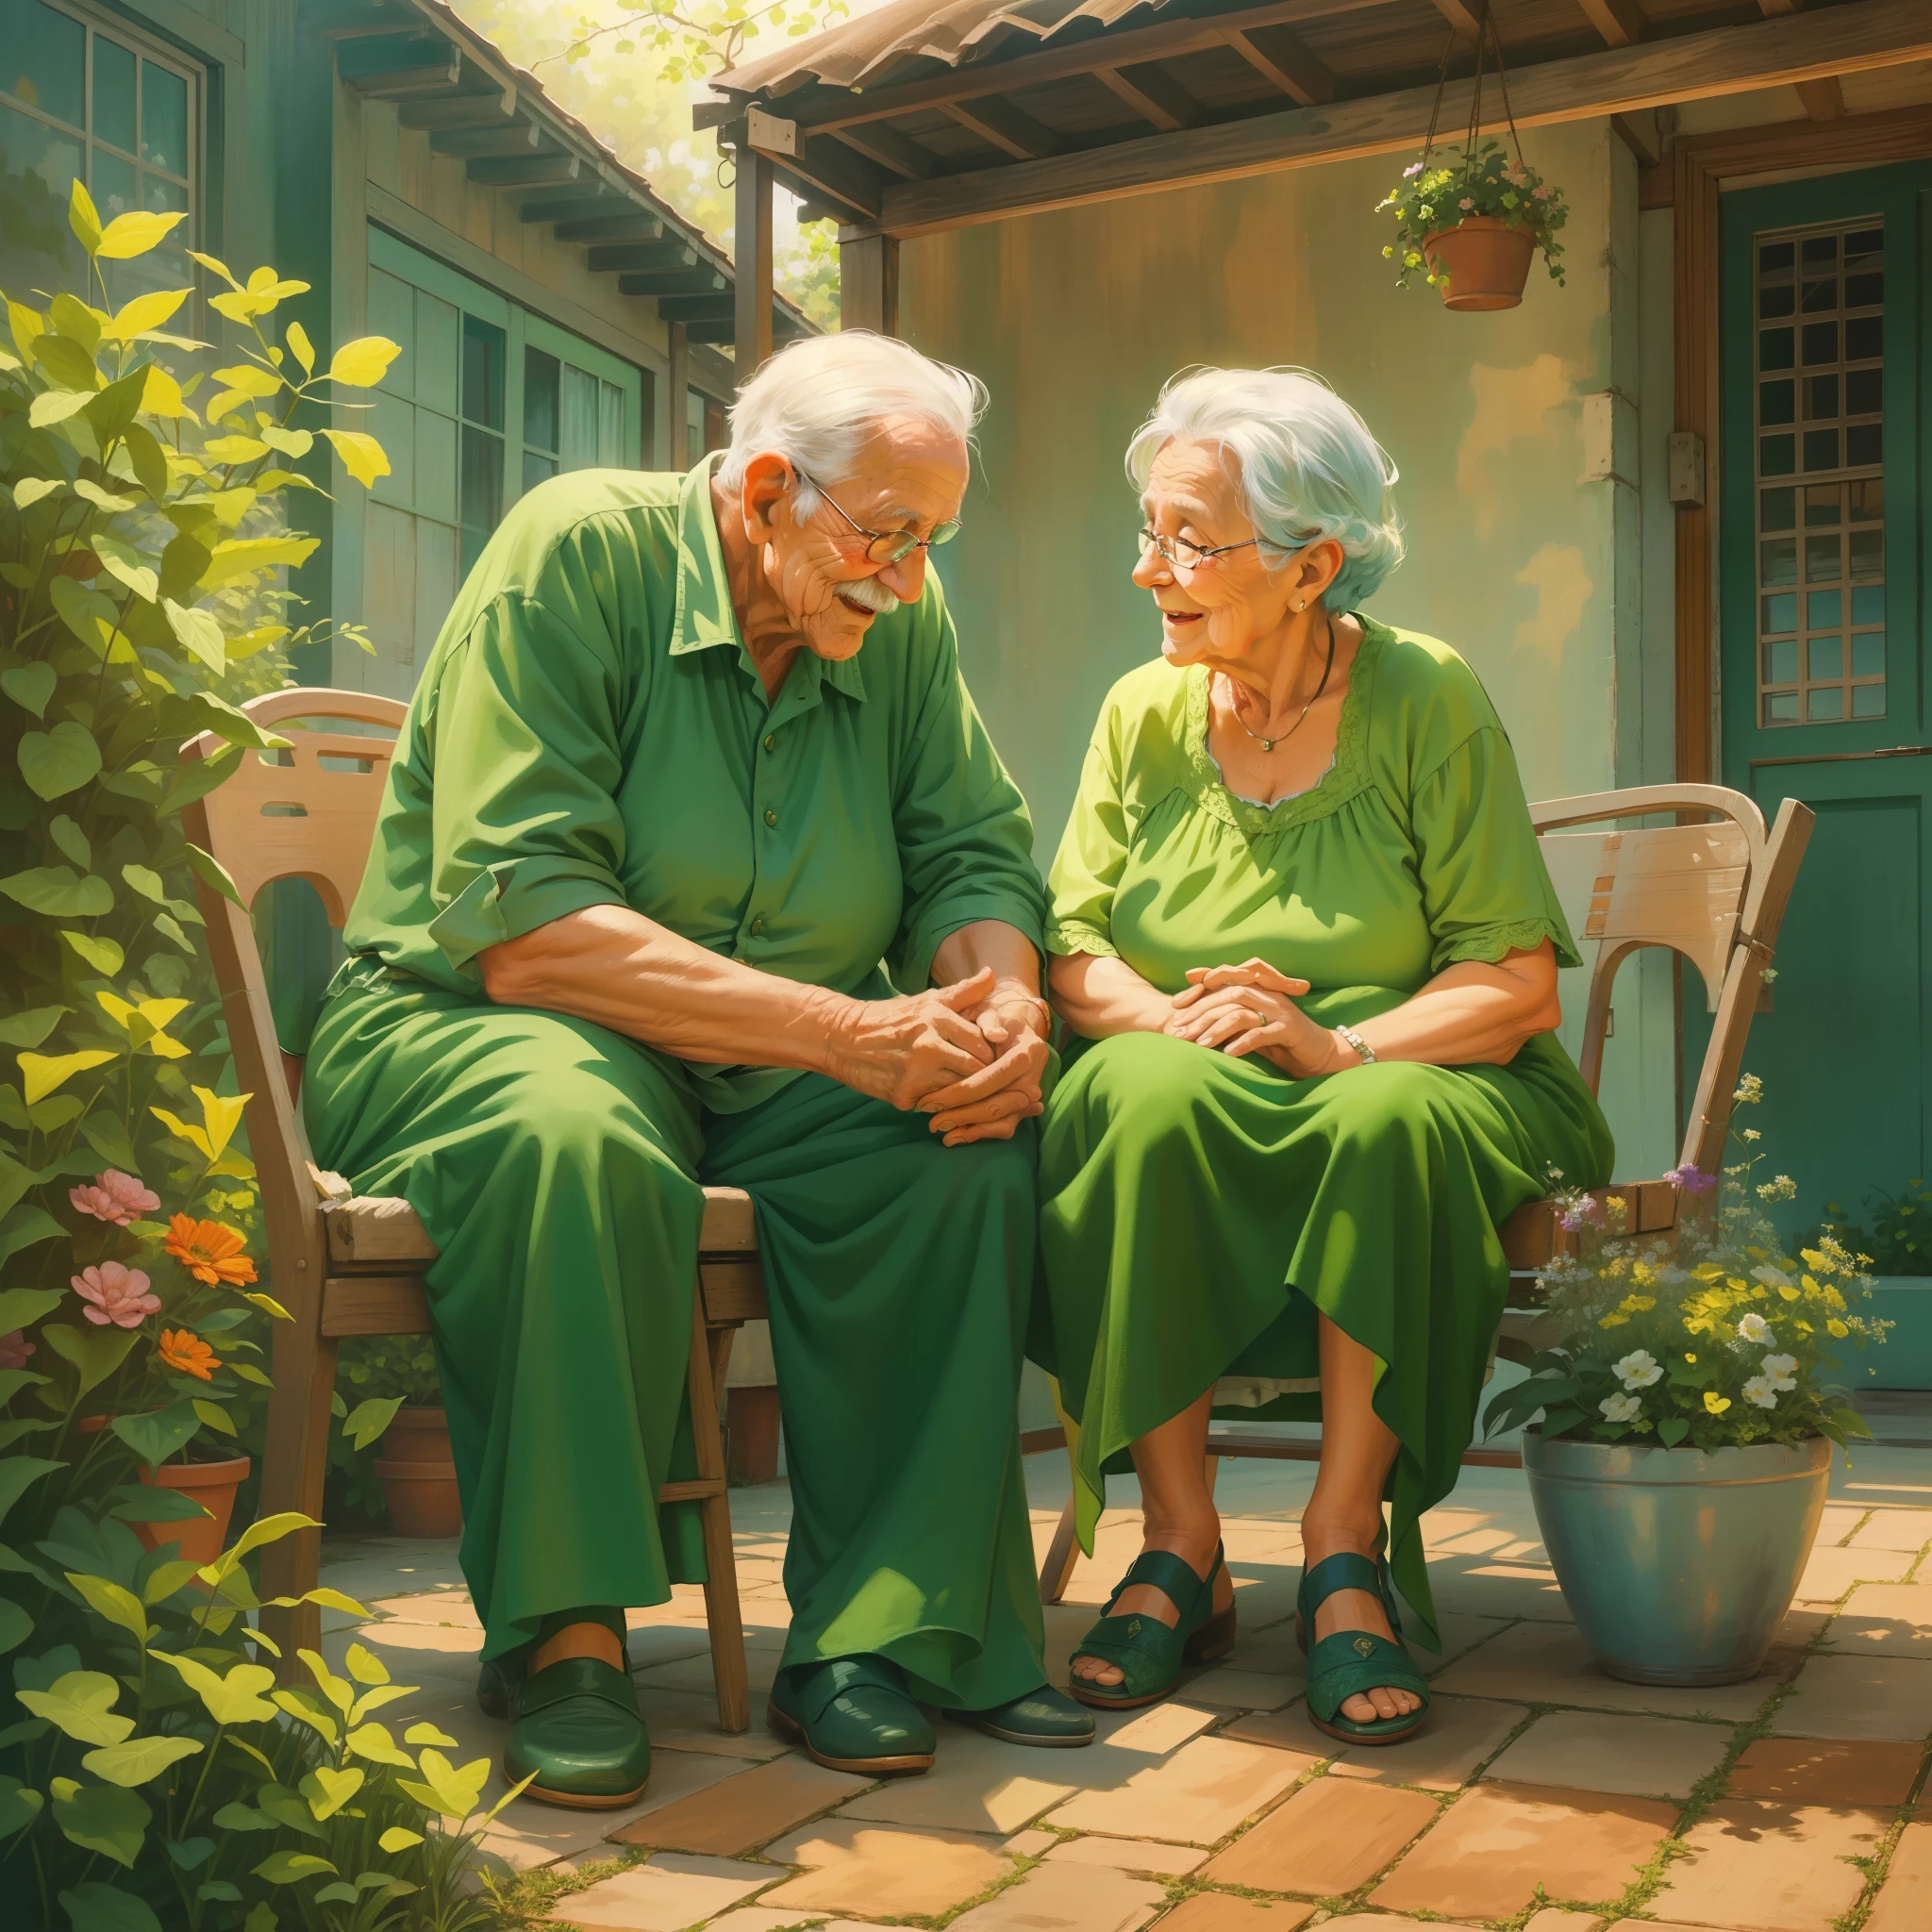 (старый дедушка и старая бабушка влюблены друг в друга, бабушка в зеленом платье, вместе сидим в их патио),Иллюстрация,акриловая живопись,[яркие цвета],[Семейные связи],[прекрасная сцена],[мирная атмосфера],(Лучшее качество,Высокое разрешение,шедевр:1.2),ультрадетализированный,[естественное освещение],[ностальгический],хорошее настроение,Теплые тона